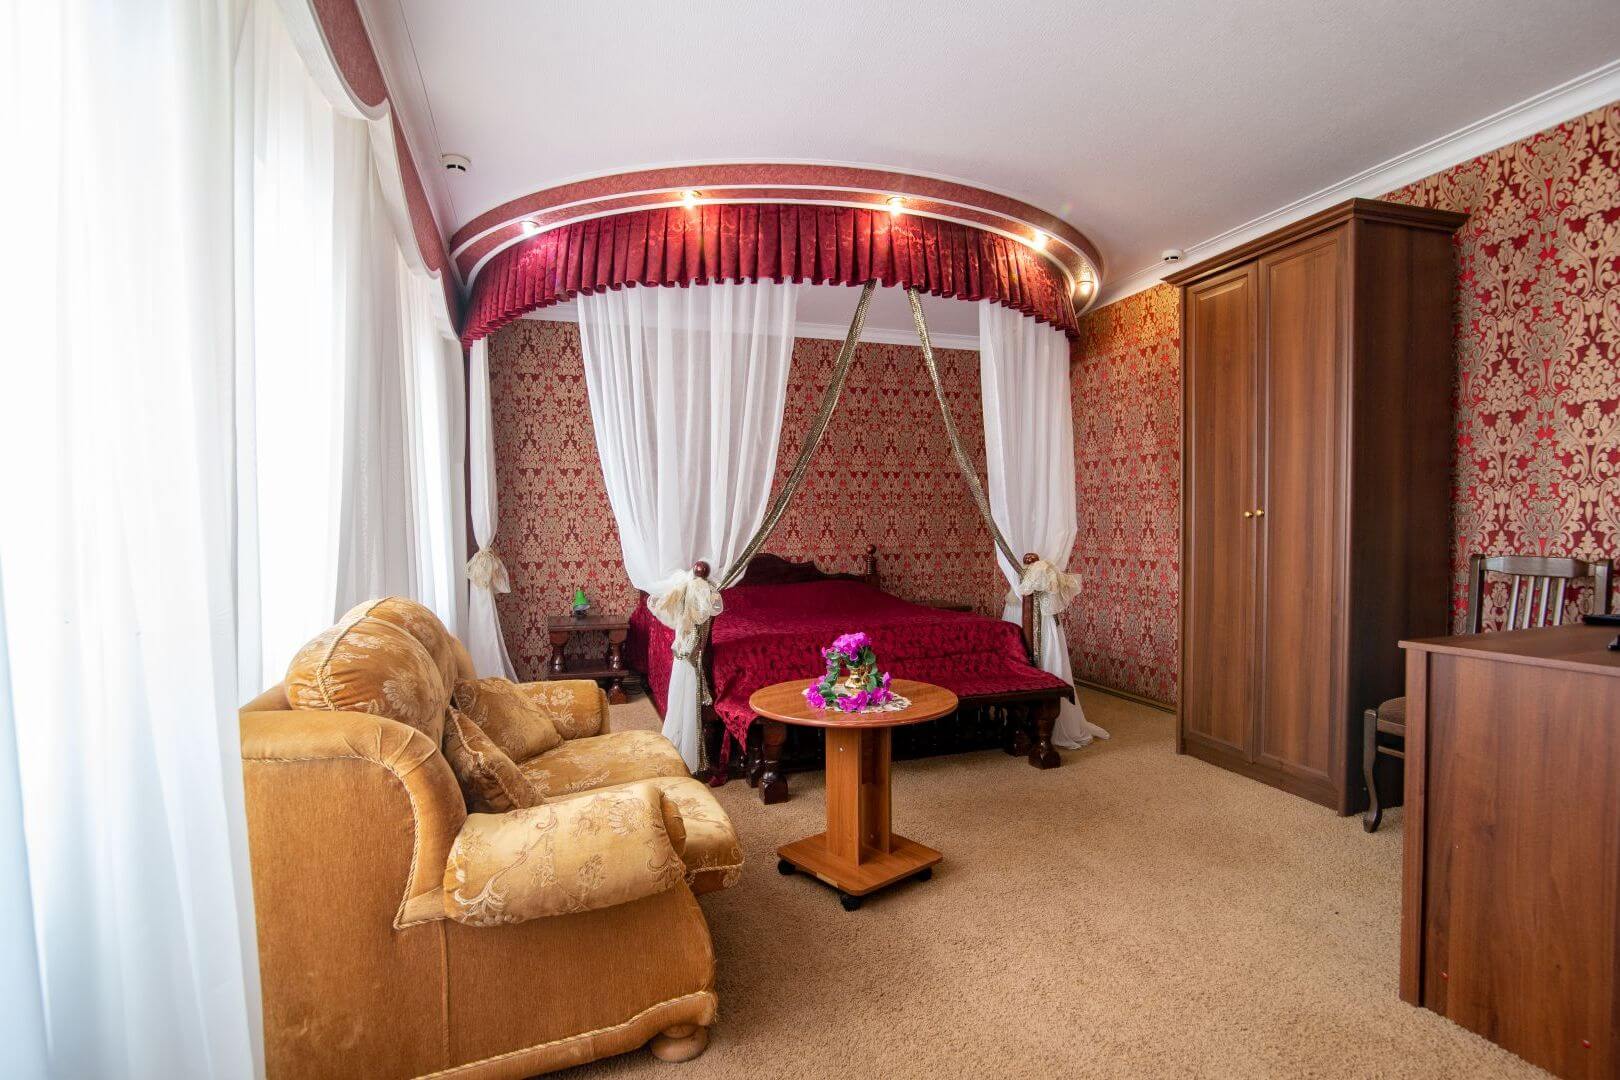 Отель «Шахерезада». Номер: кровать с балдахином, большой диван и журнальный столик.